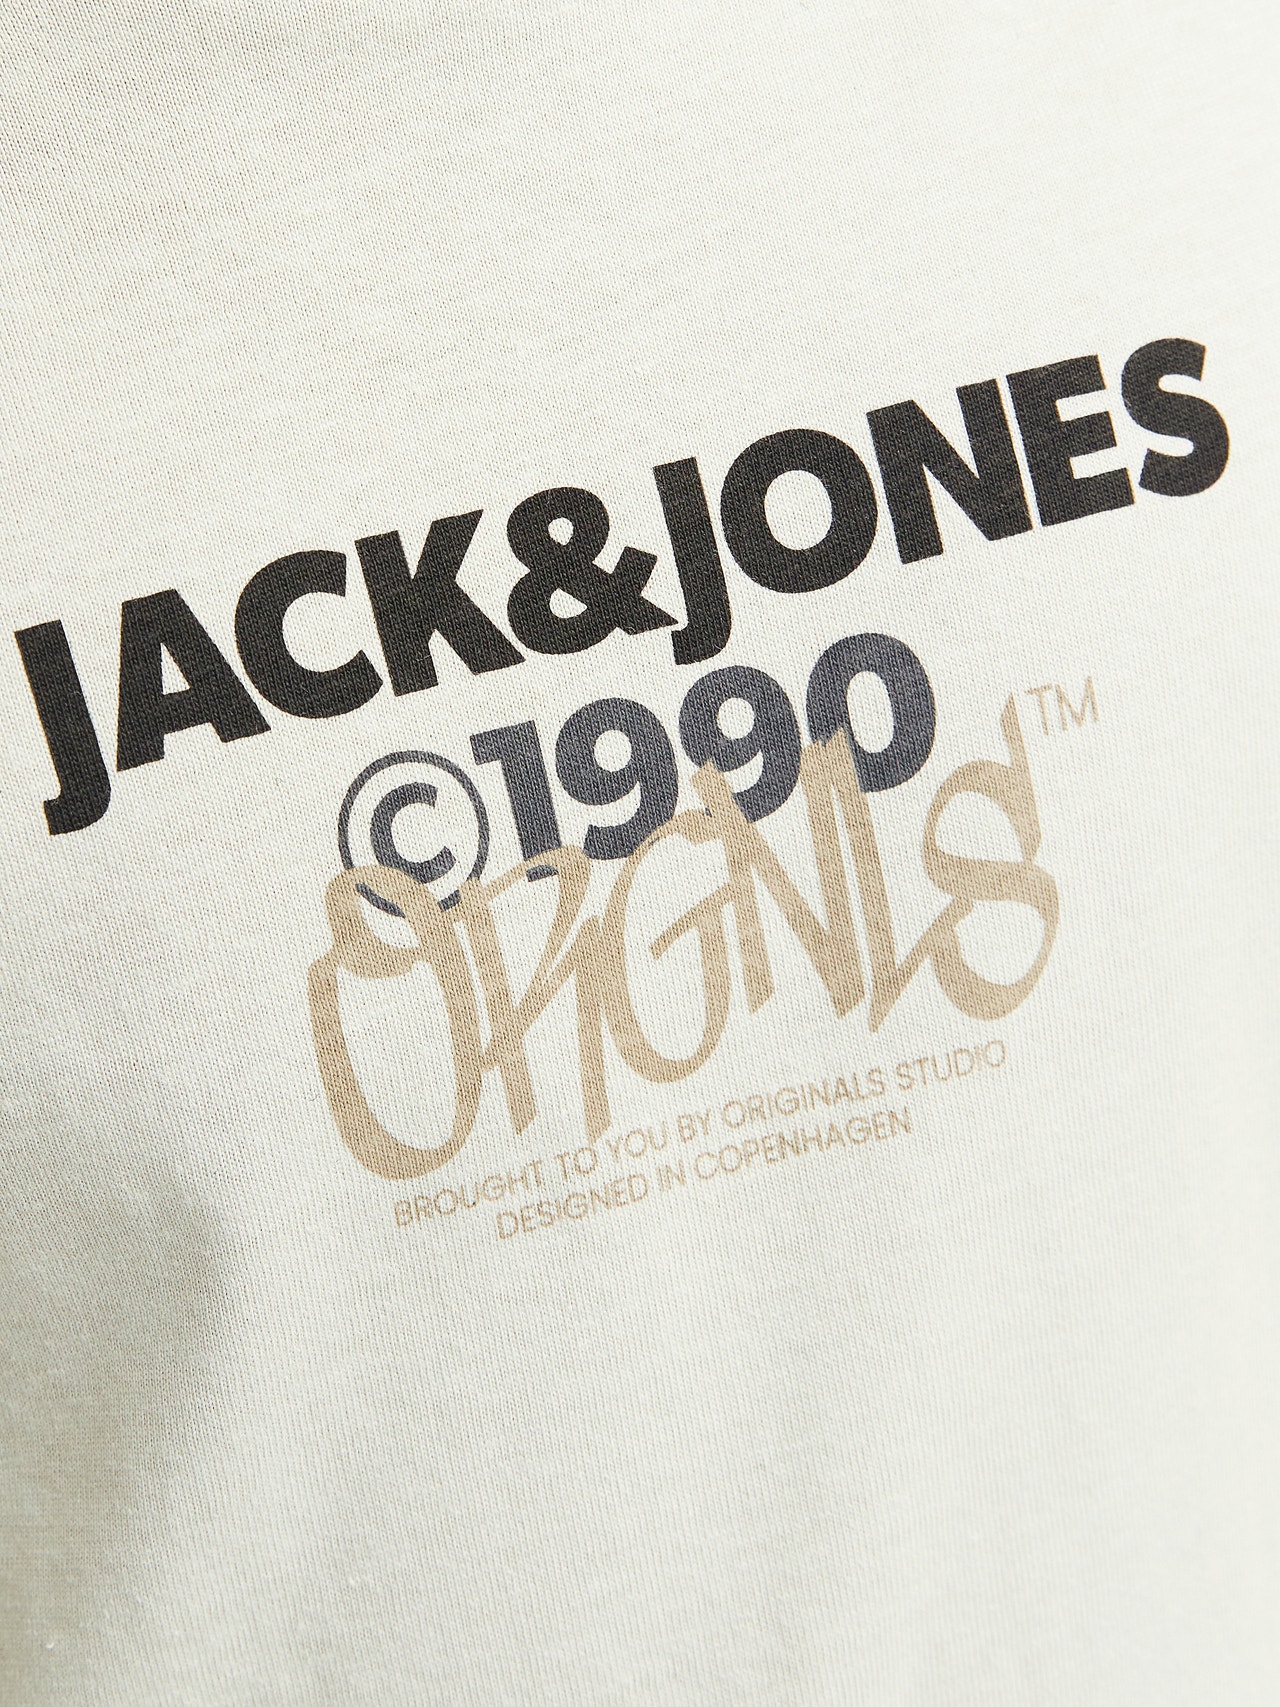 Jack & Jones Poikien Logo T-paita -Mineral Gray - 12267558